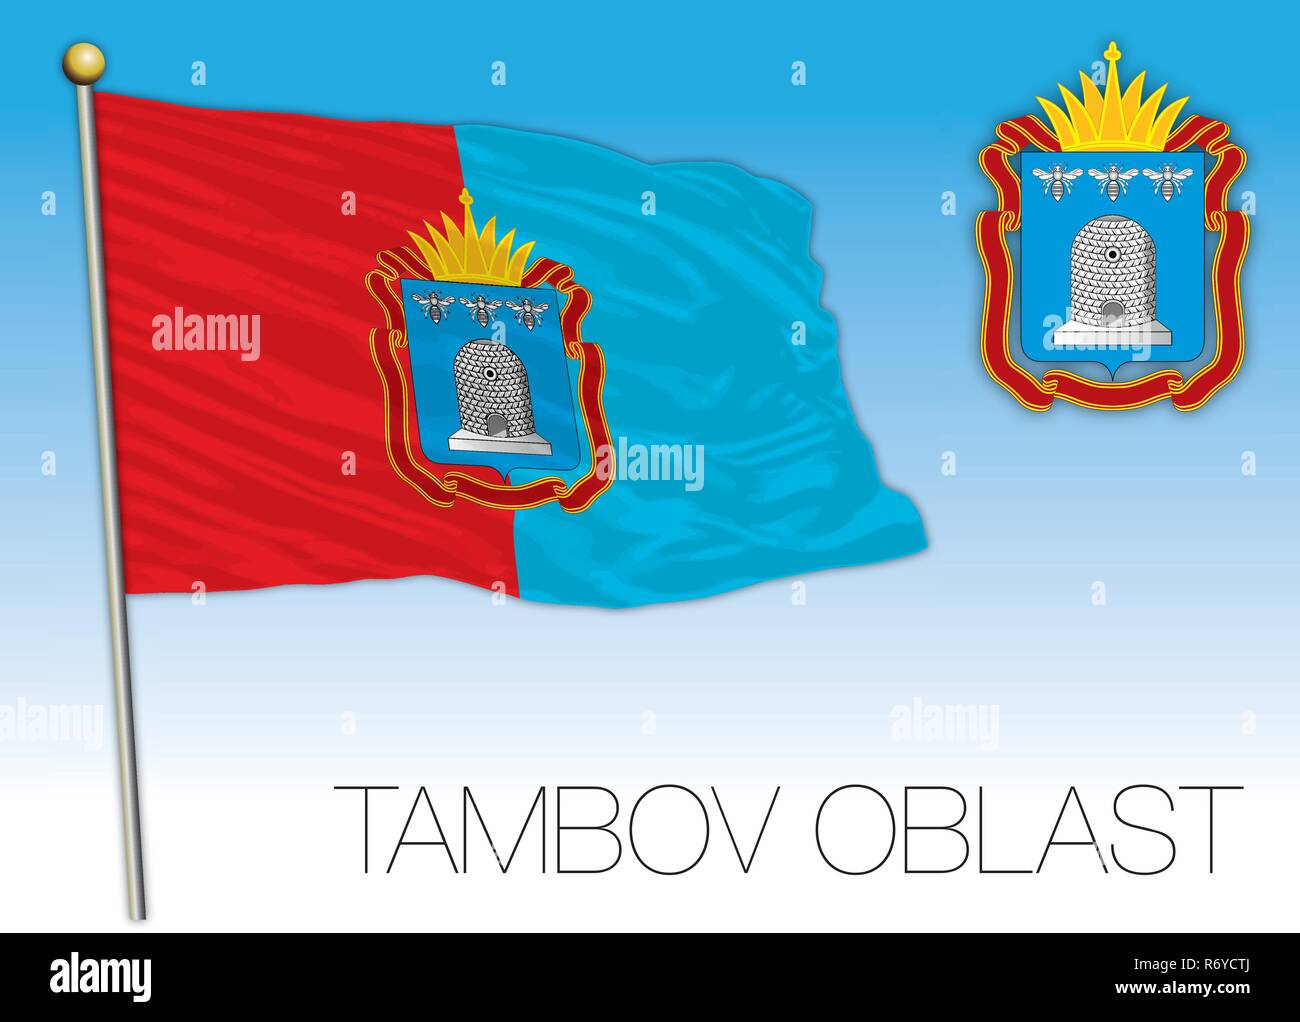 Tambov oblast flag, Russian Federation, vector illustration Stock Vector